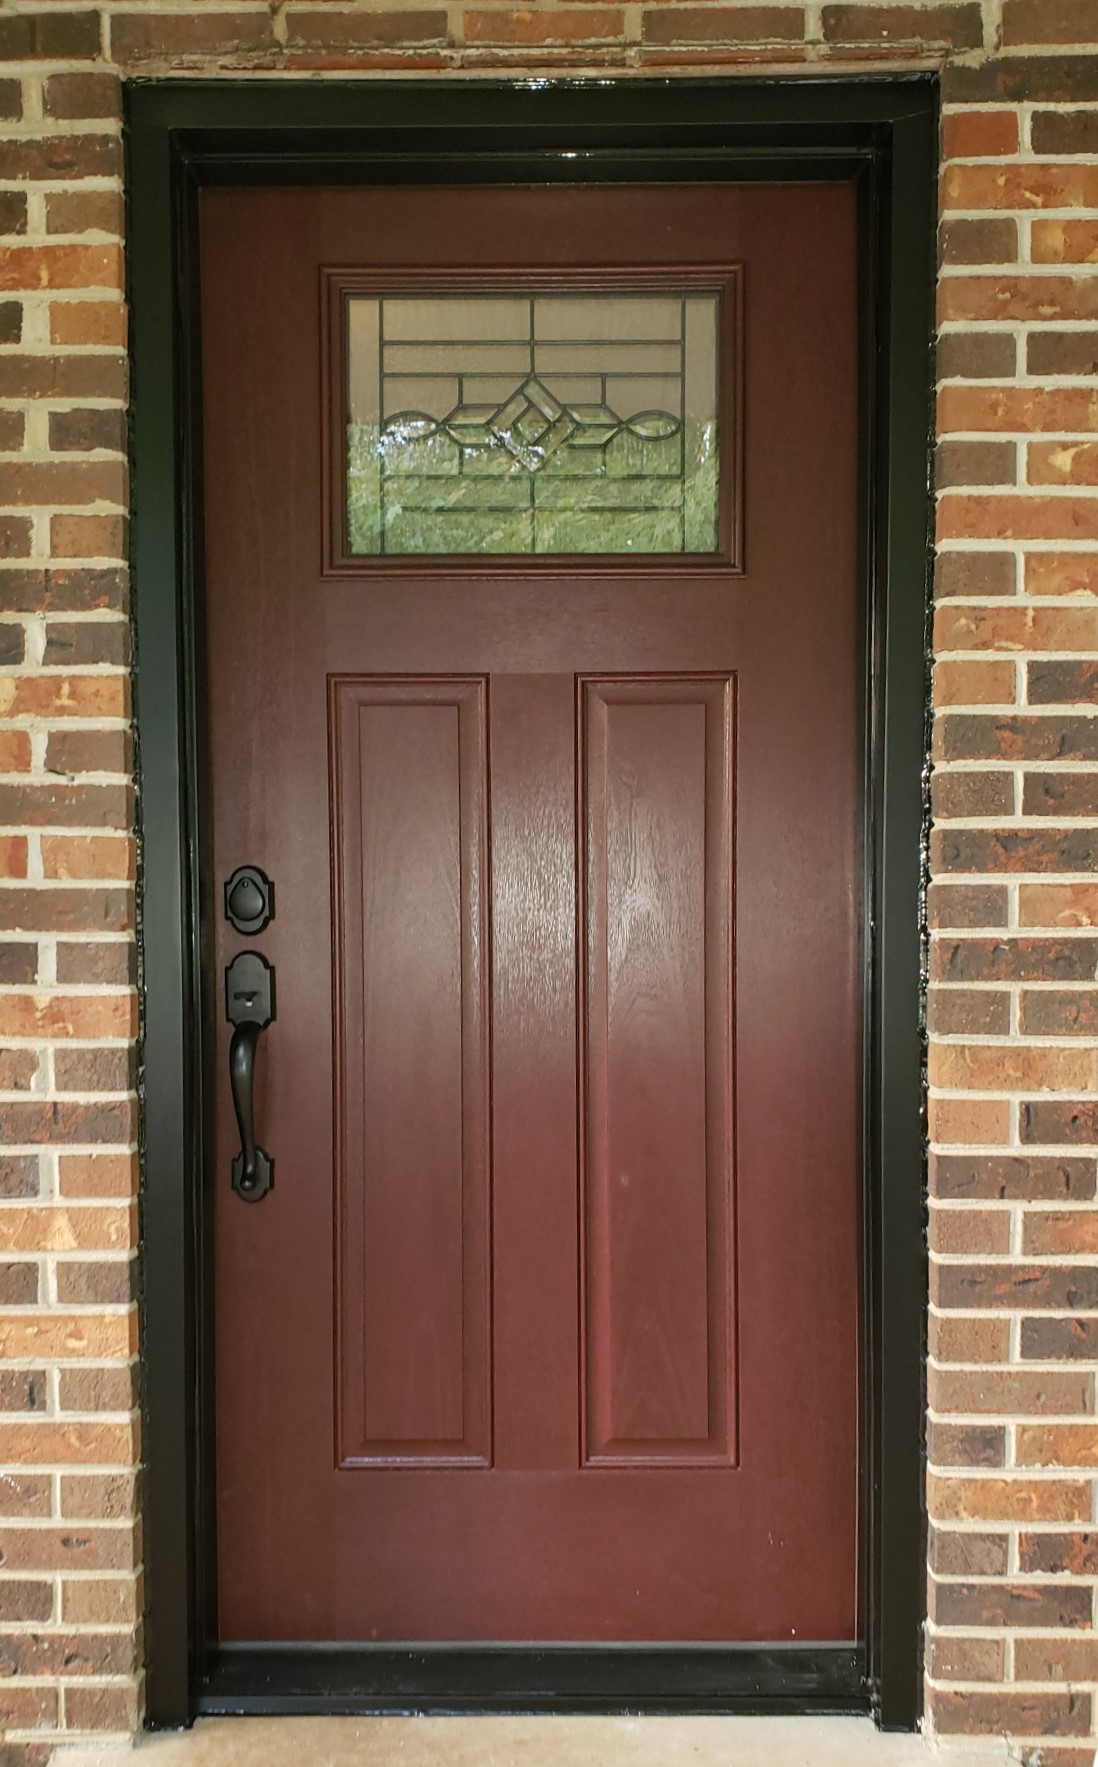 Door Entry